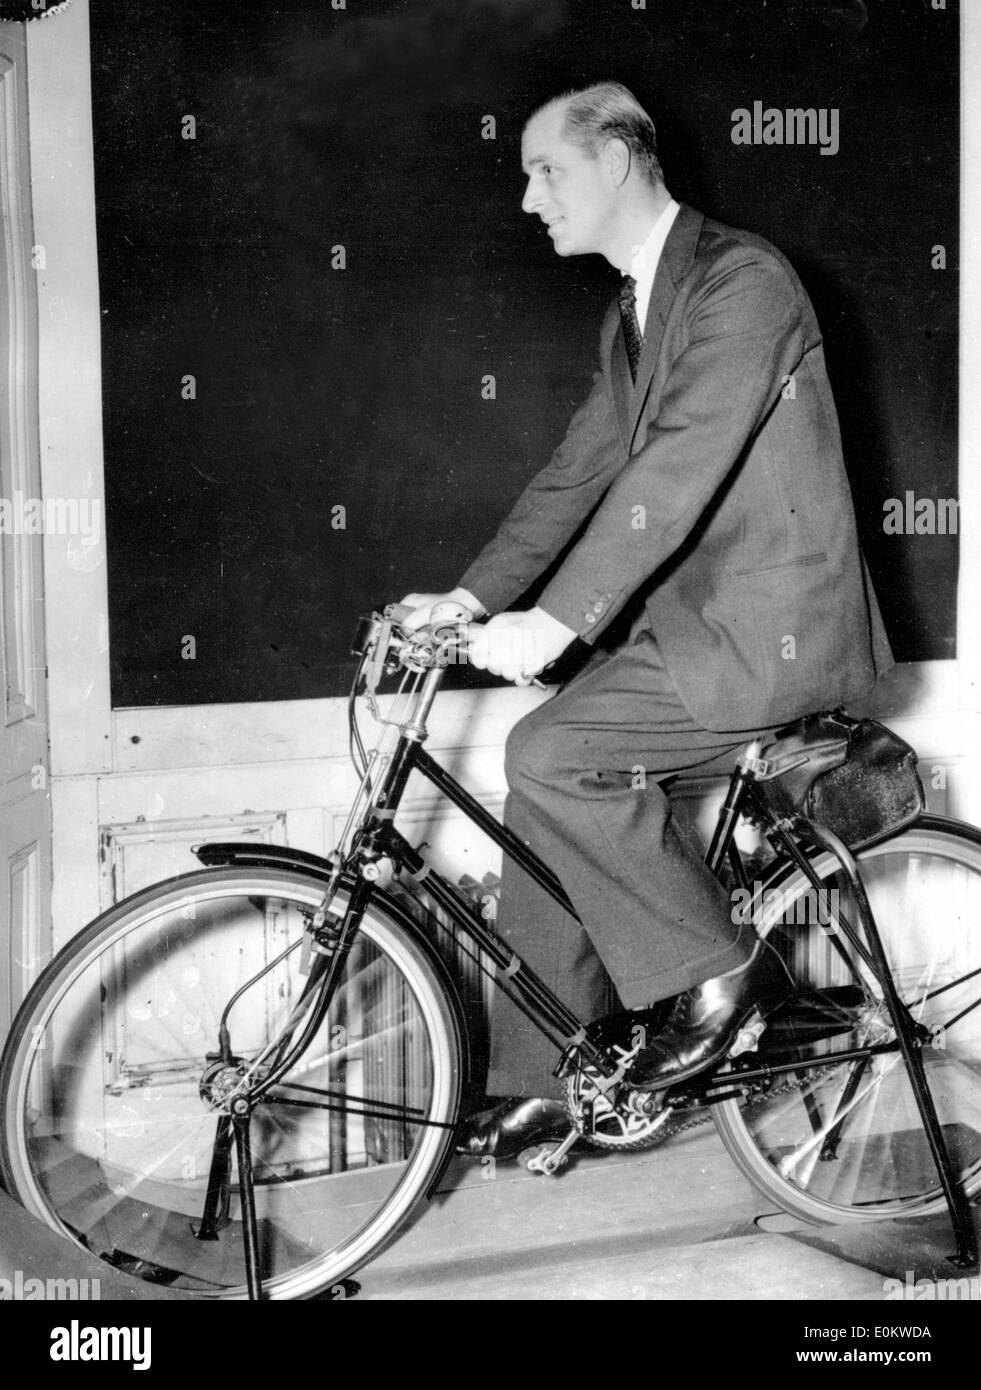 El príncipe Felipe prueba una bicicleta en una exposición Foto de stock